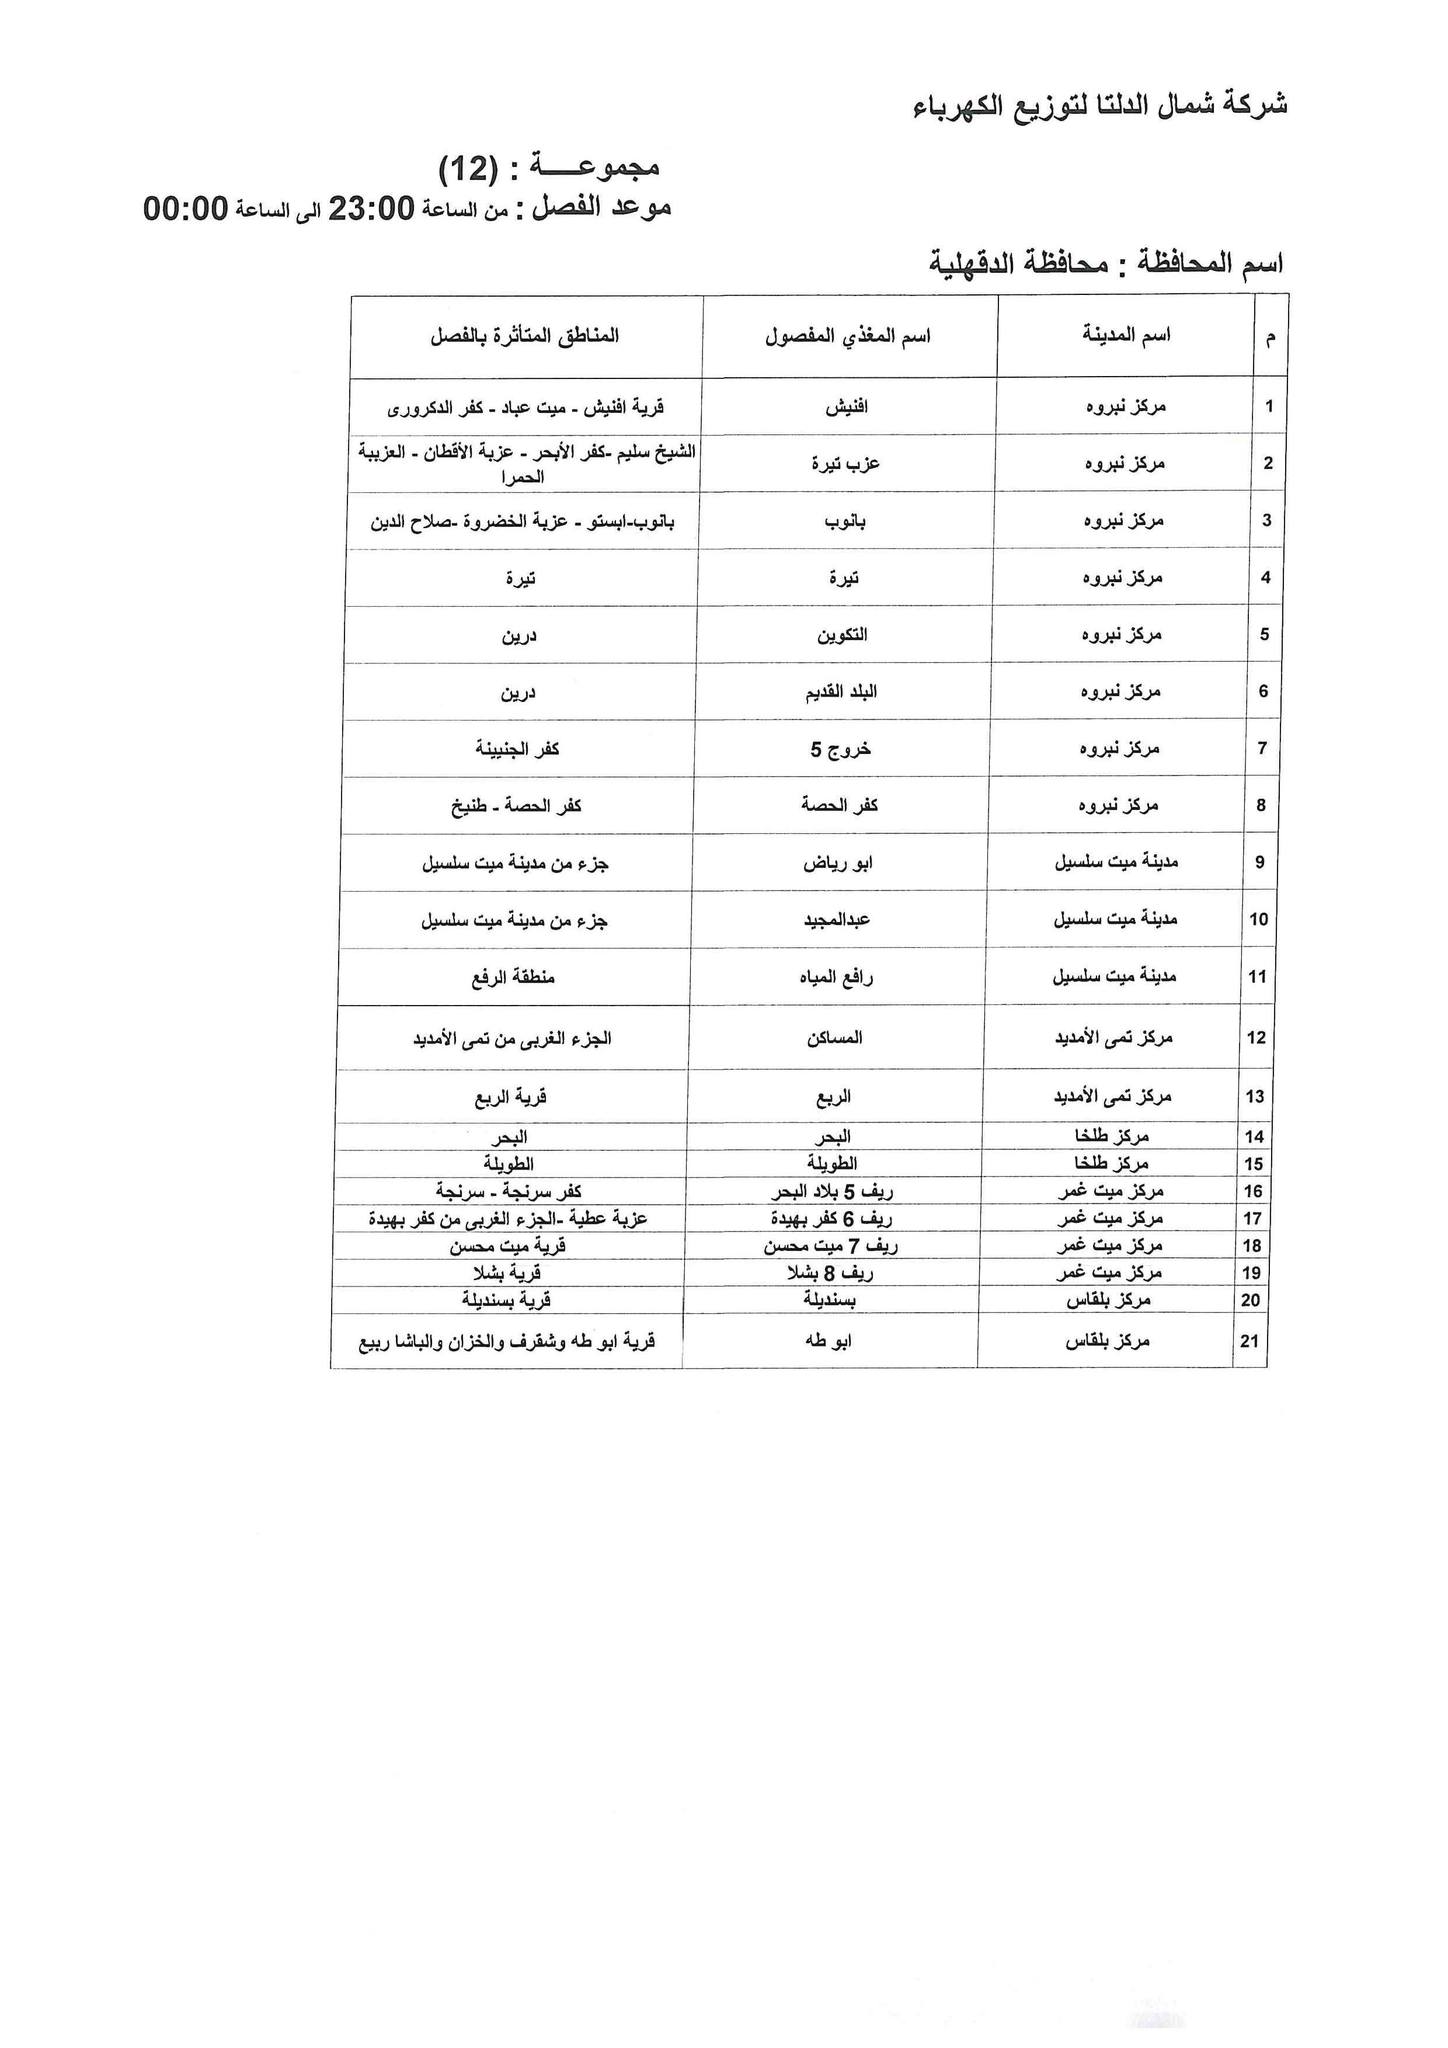 الإعلان عن خطة تخفيف أحمال الكهرباء فى محافظة الدقهلية 21